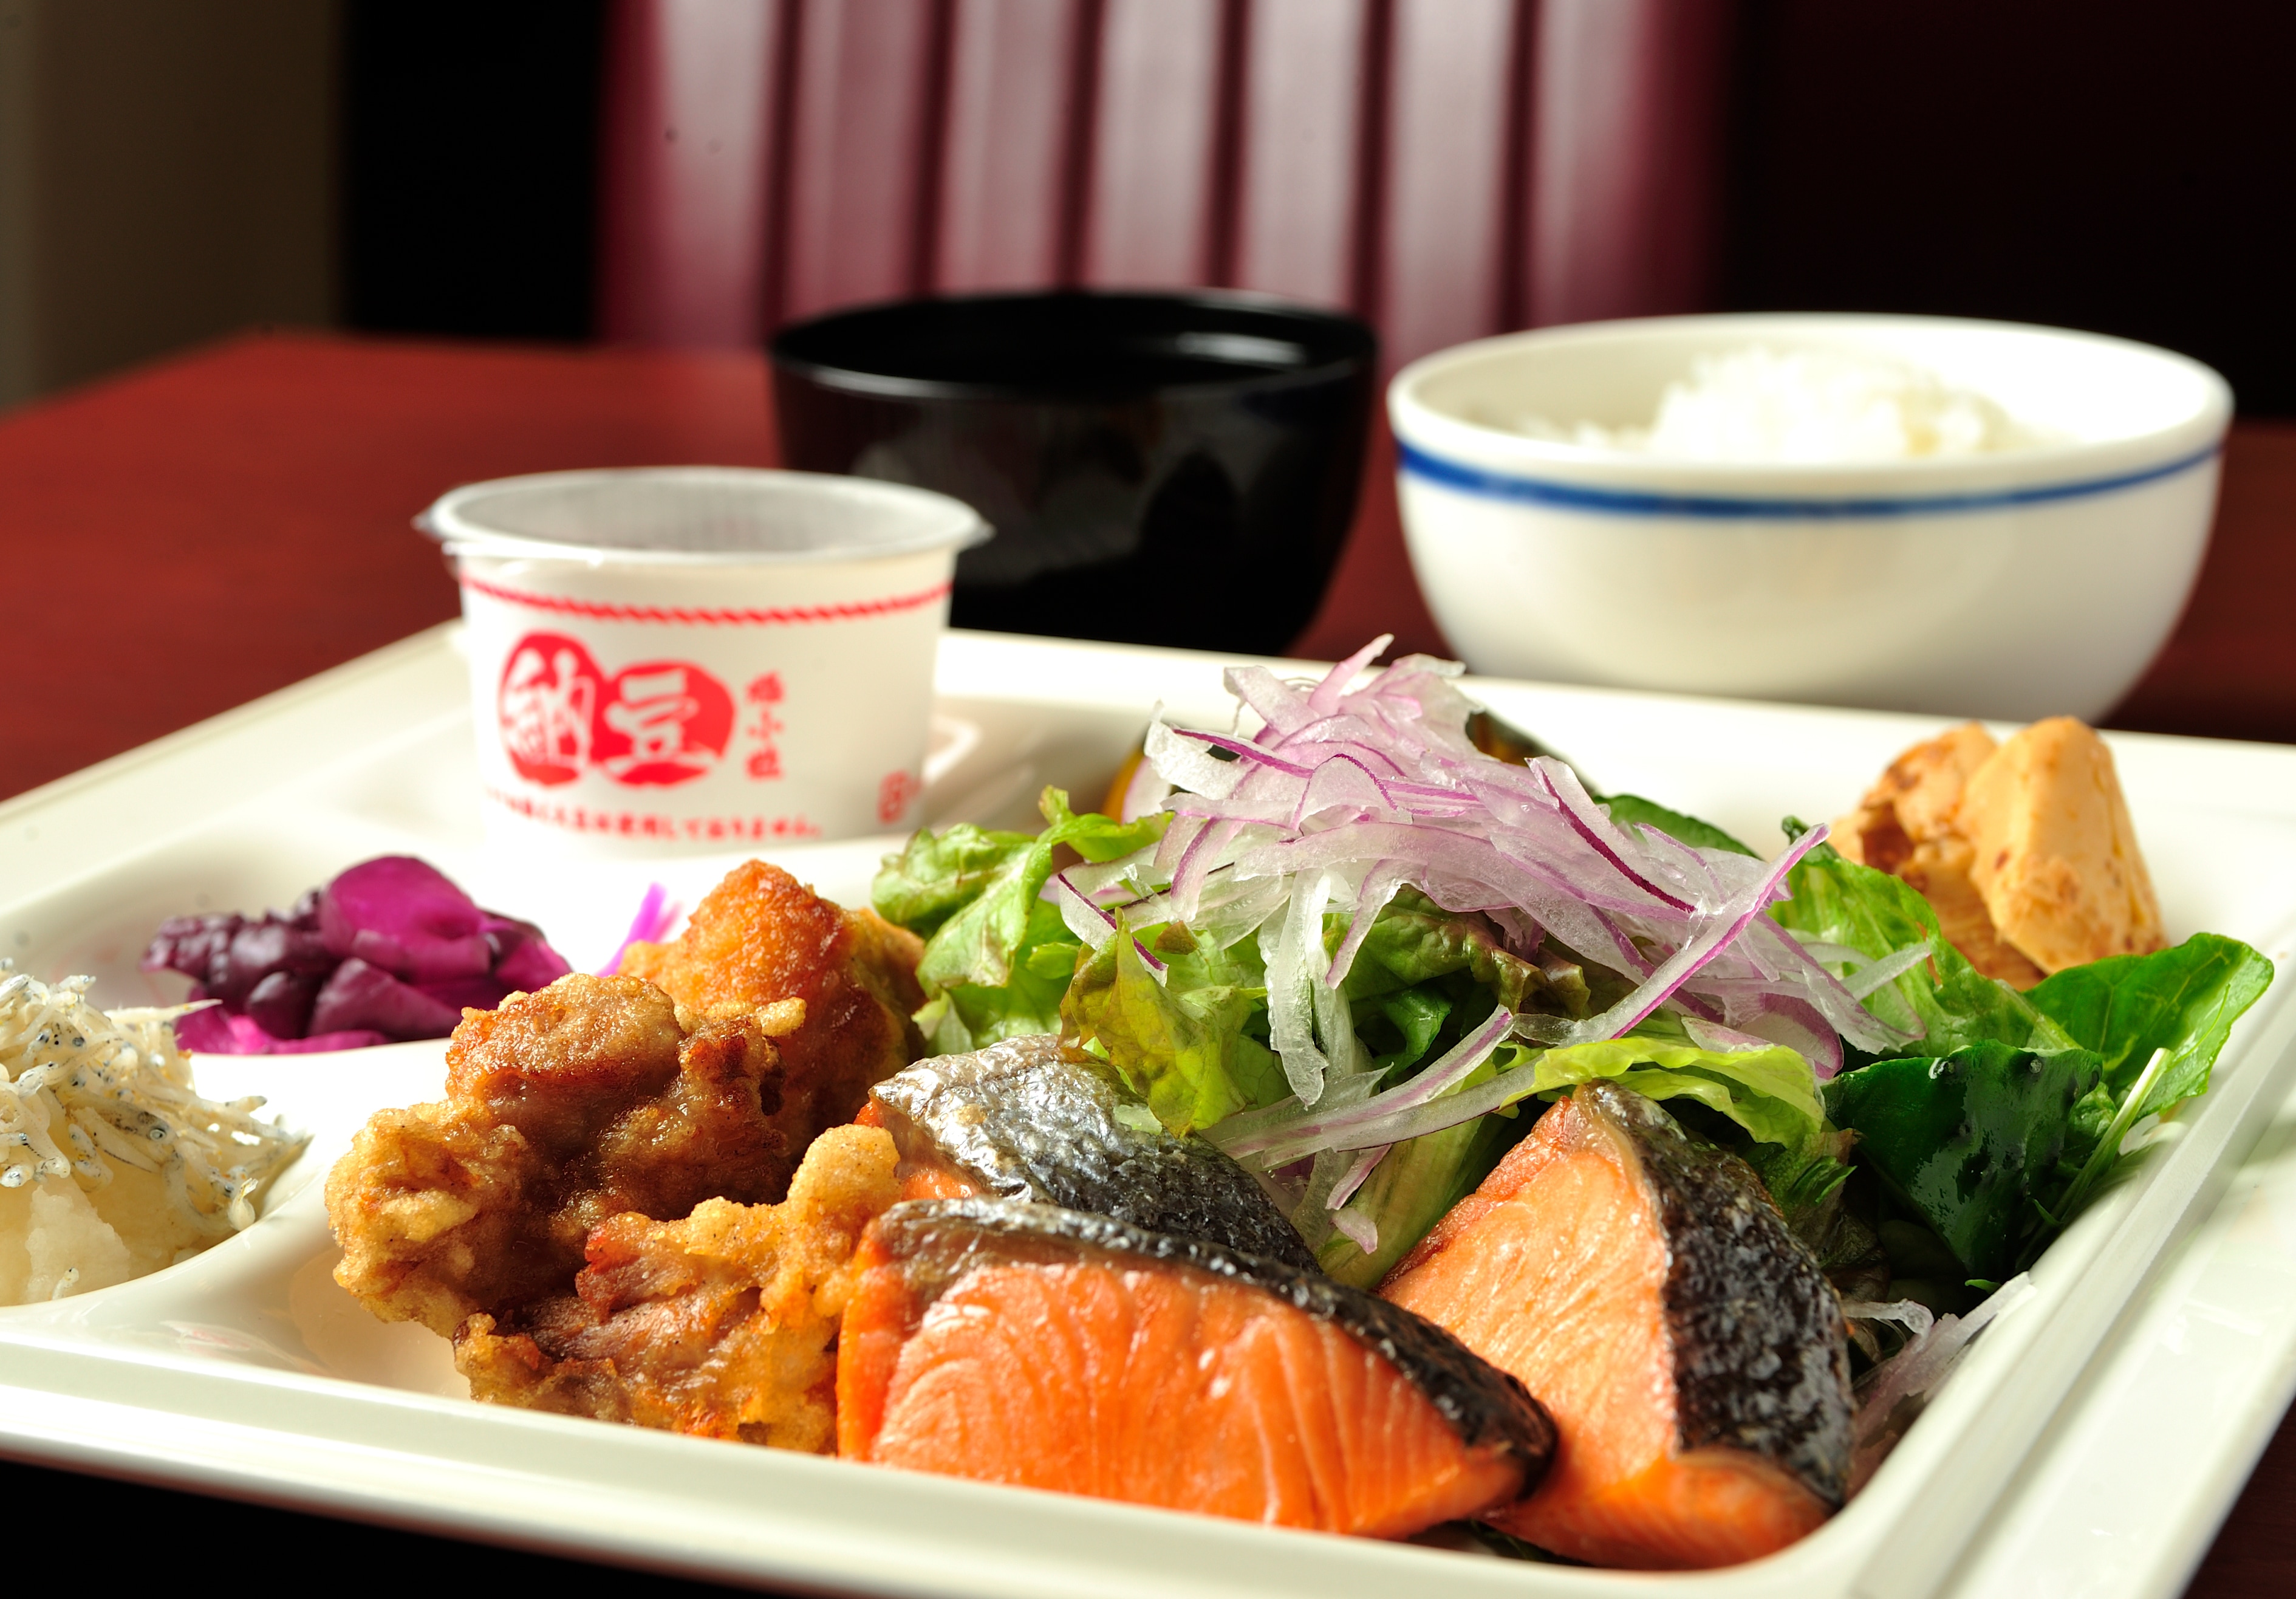 自助日本料理的示例“如何服務取決於客戶♪” *還有每日限量菜單。